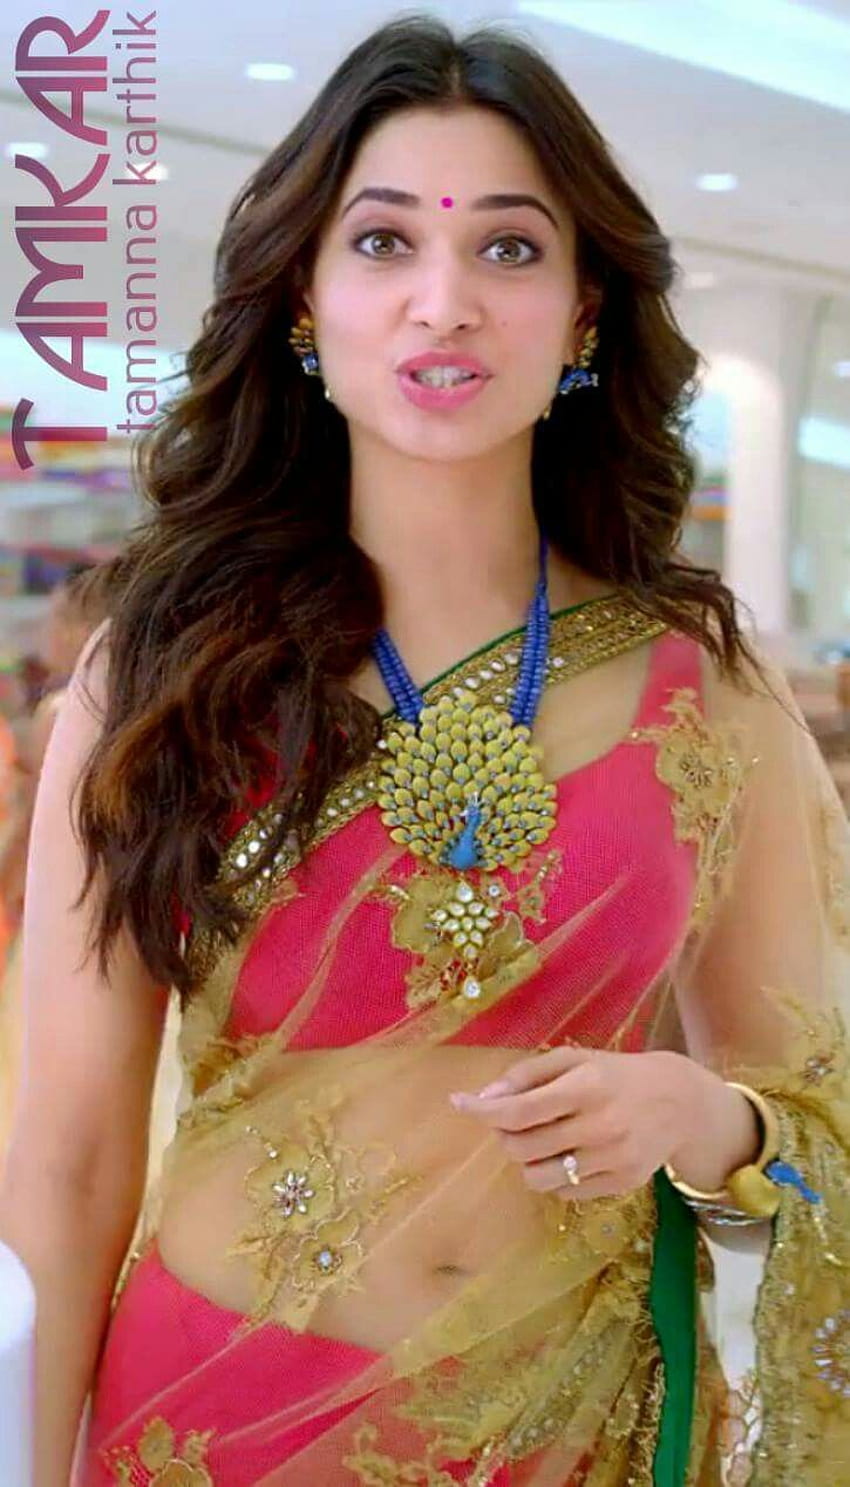 ボード「Bollywood Fashion, tamanna navel in saree」のピン HD電話の壁紙